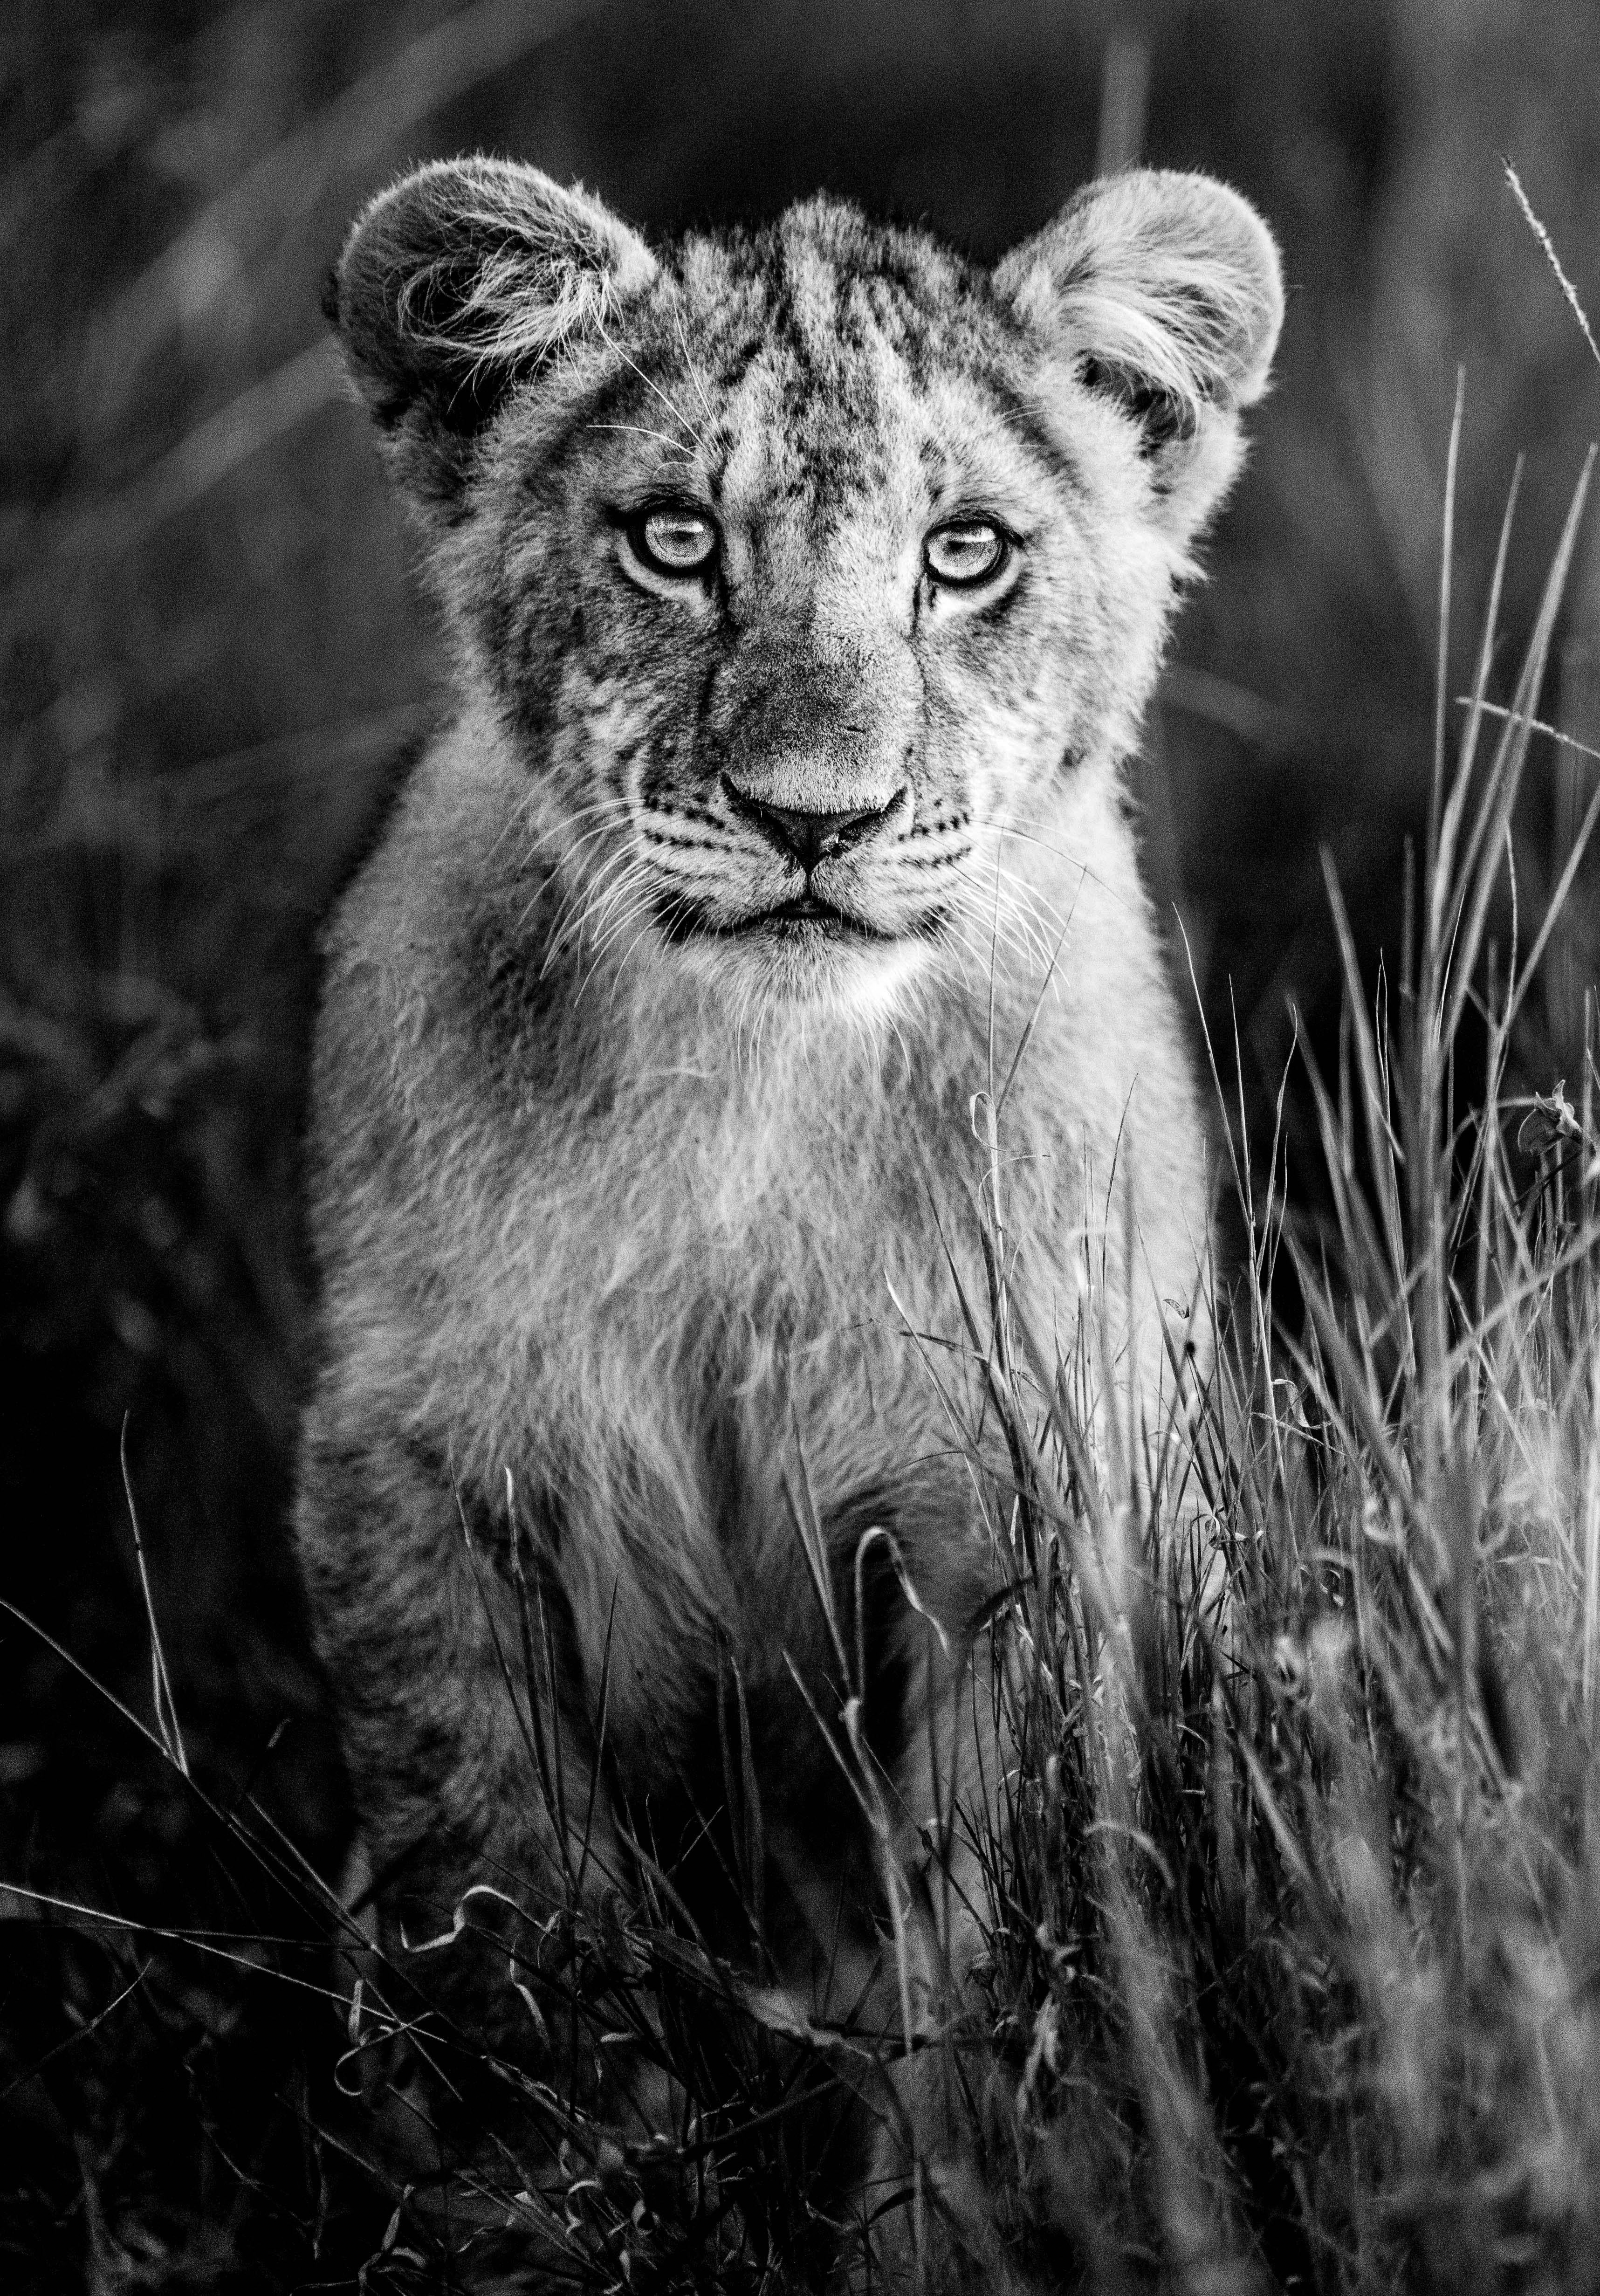 James Lewin - Curious Cub, Borana, Kenya, Photography 2020, Printed After